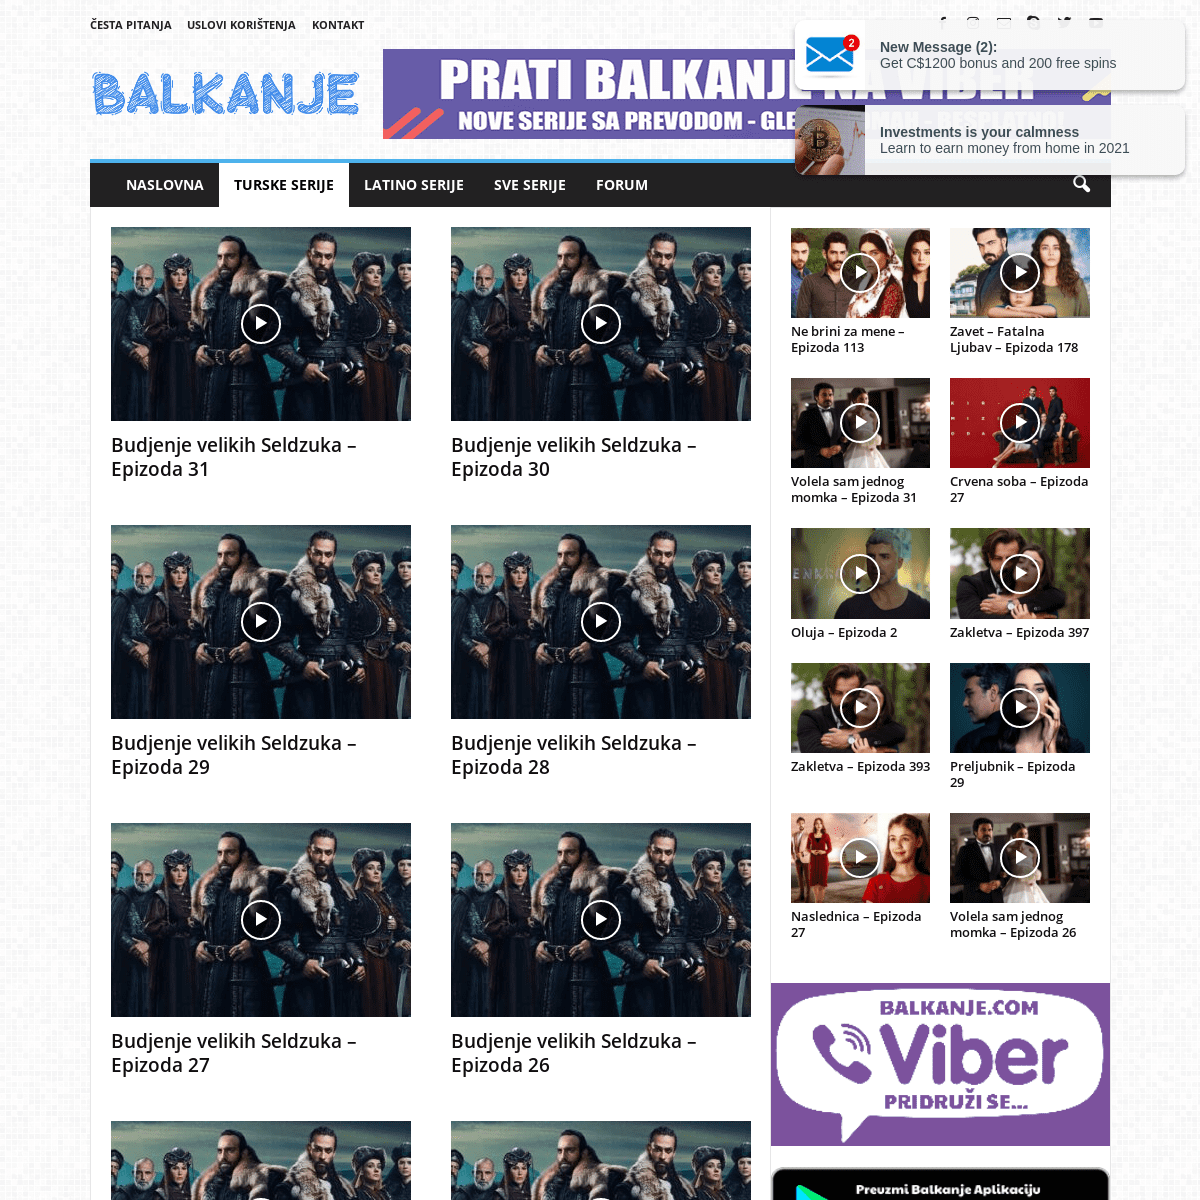 A complete backup of https://balkanje.com/turske-serije/budjenje-velikih-seldzuka-2020/